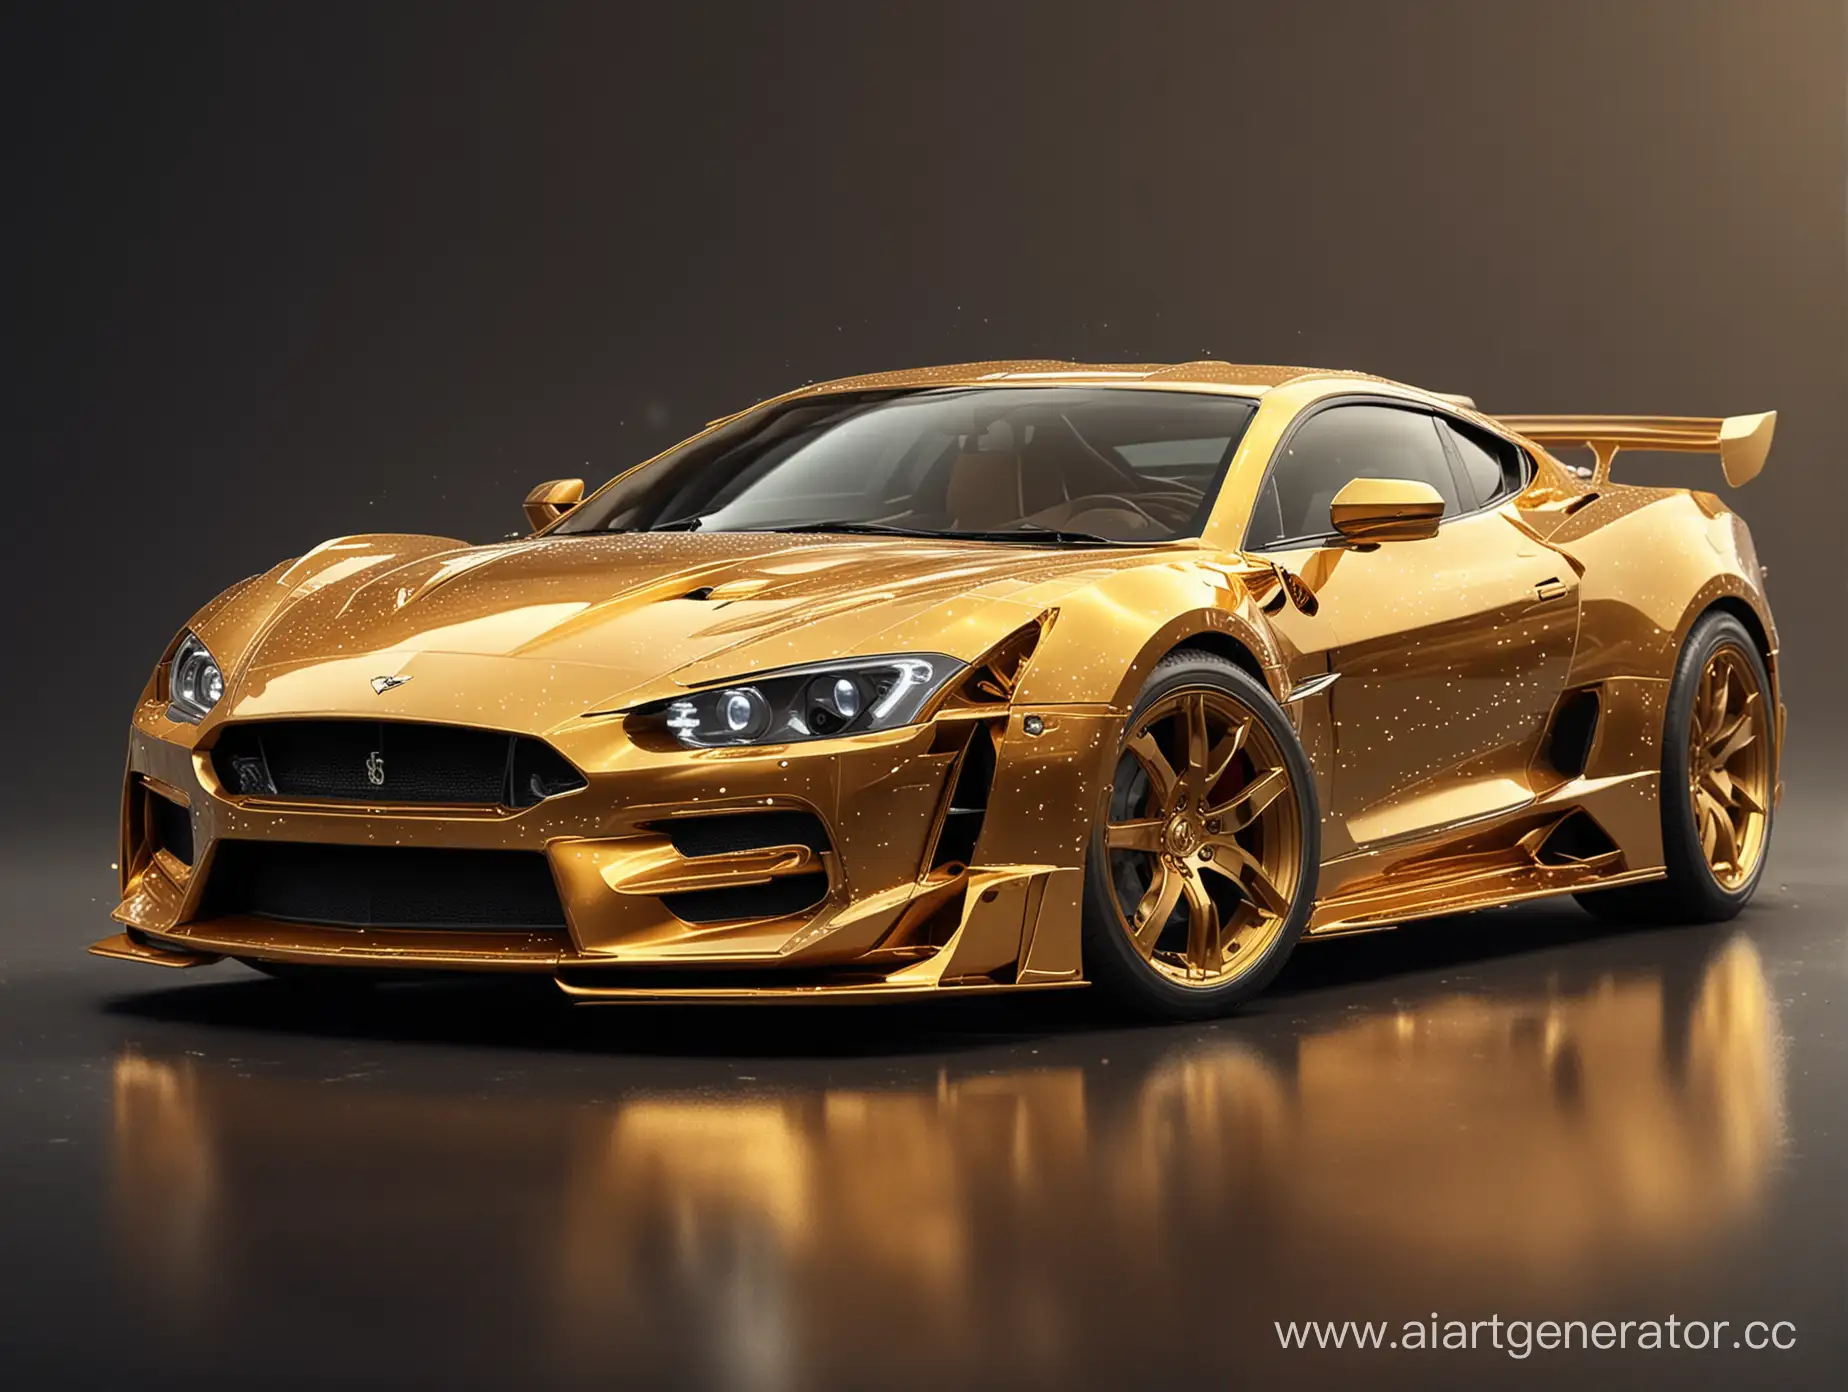 сгенерируй картинку золотого спортивного автомобиля с элементами казино